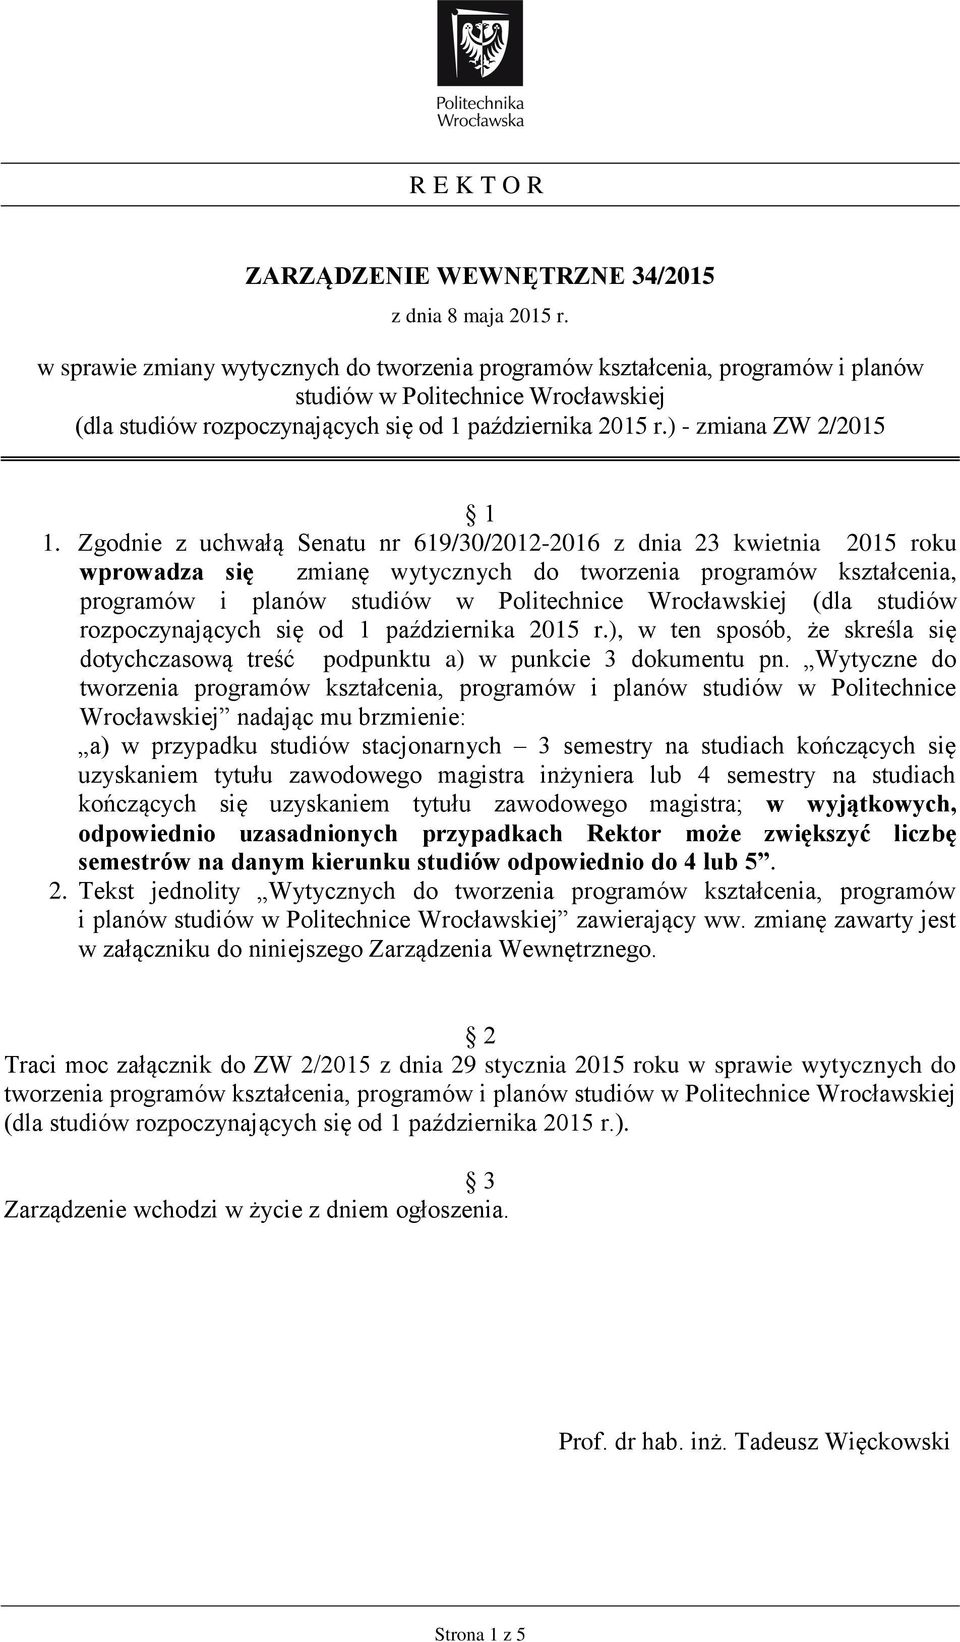 Zgodnie z uchwałą Senatu nr 619/30/2012-2016 z dnia 23 kwietnia 2015 roku wprowadza się zmianę wytycznych do tworzenia programów kształcenia, programów i planów w Politechnice Wrocławskiej (dla